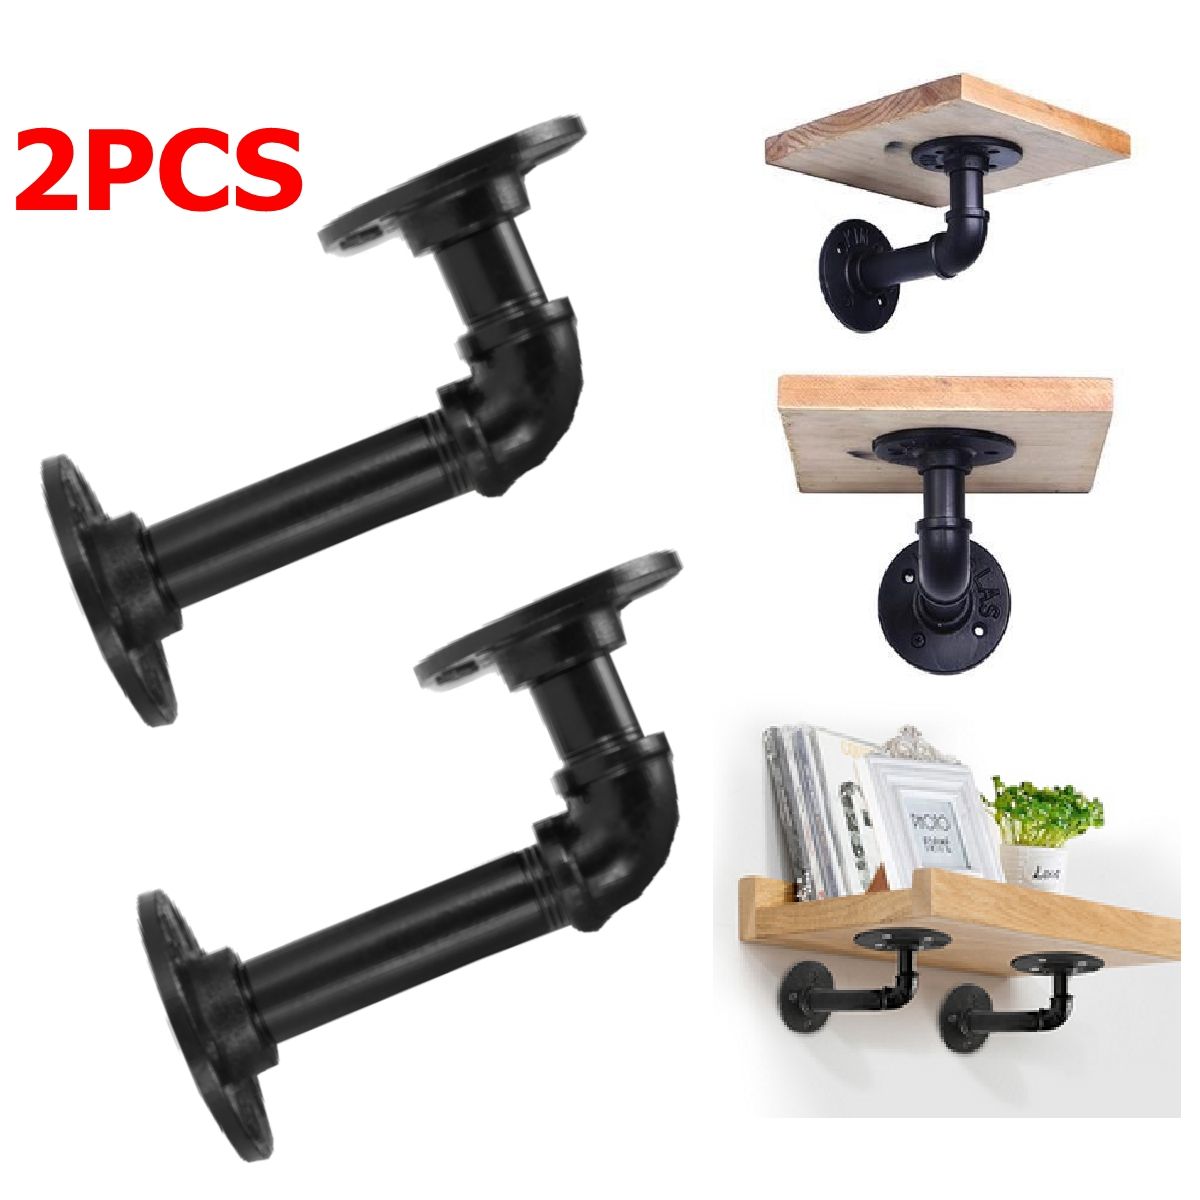 2PCS-Steampunk-Industrial-Steel-Pipes-Fittings-scaffold-board-shelf-brackets-1632854